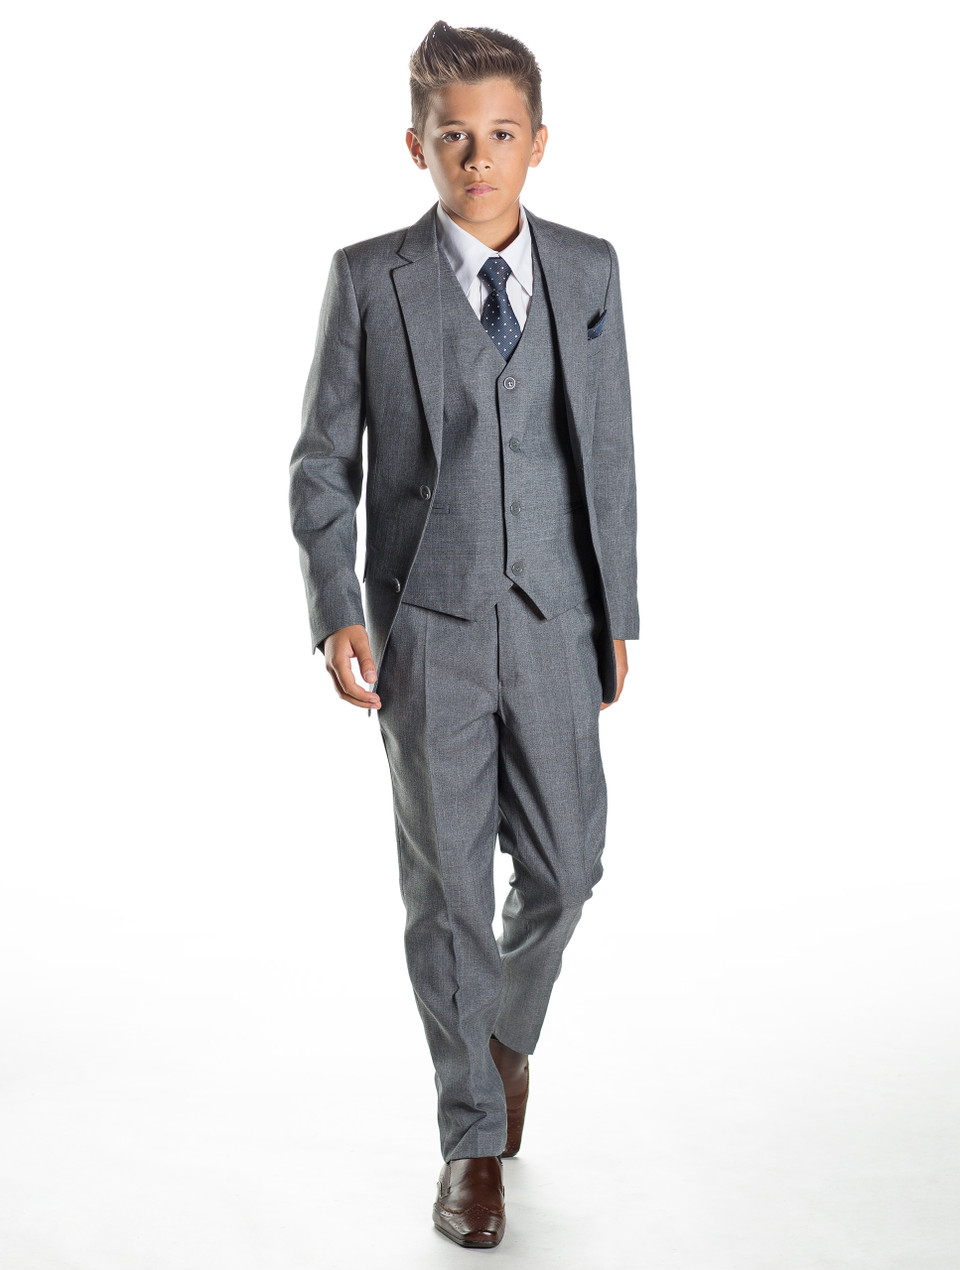 Boys grey suit | Boys wedding suit | Prom suits | Philip